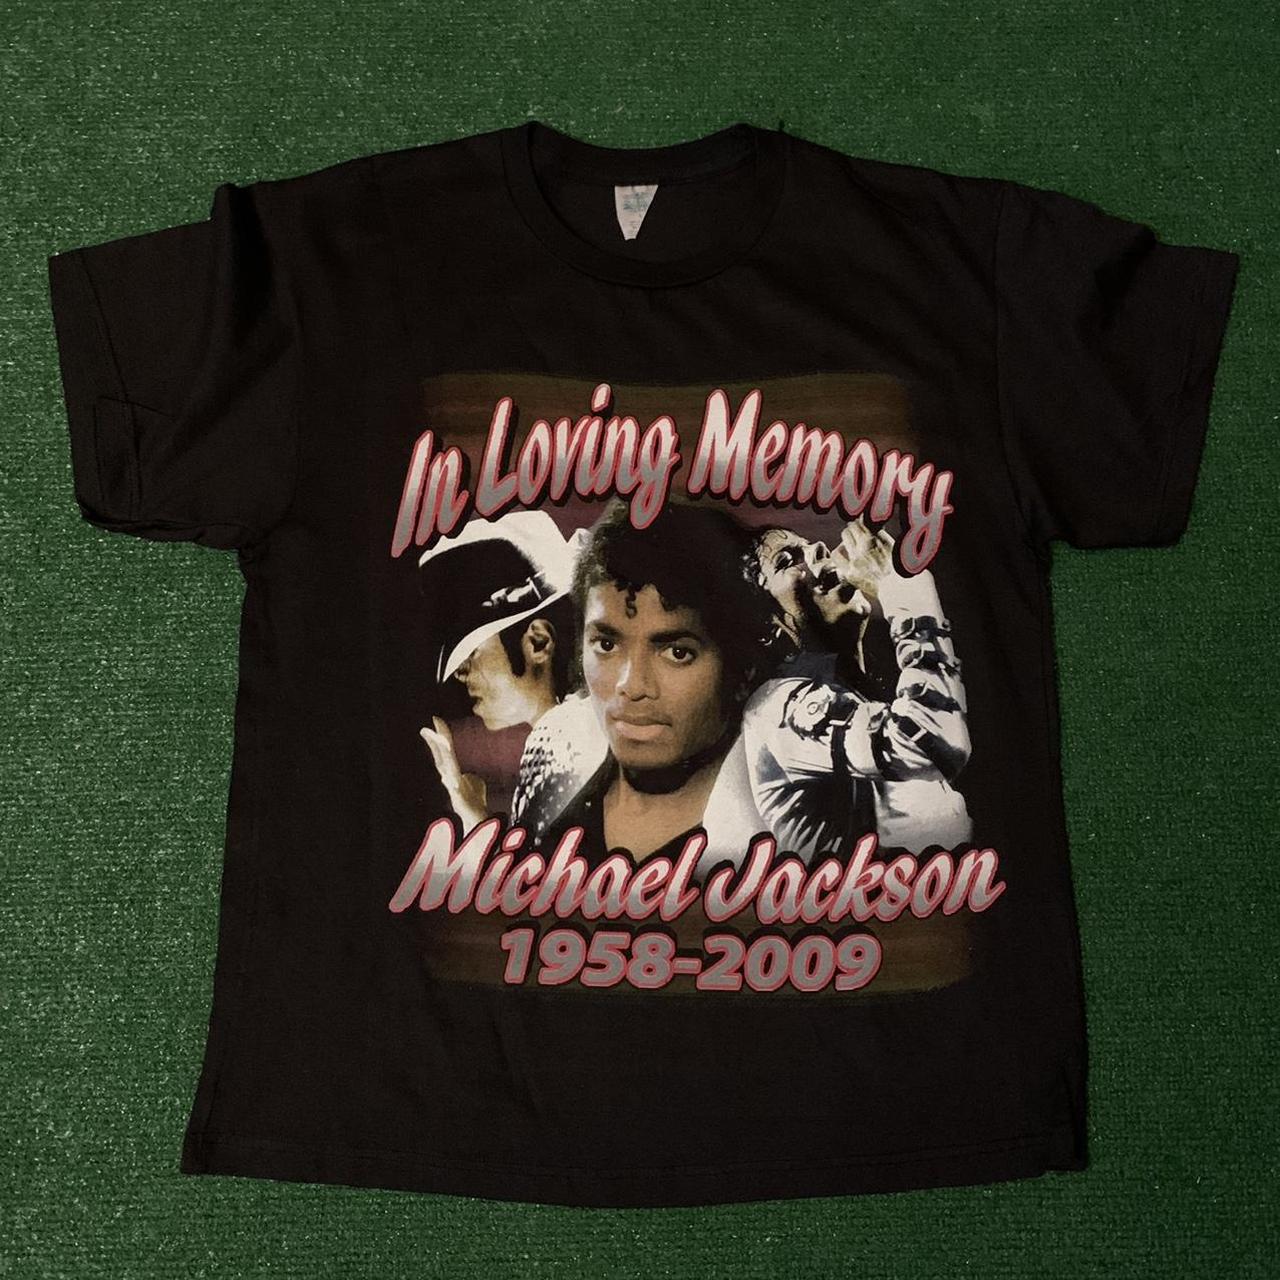 Michael Jackson - men's t-shirt size L